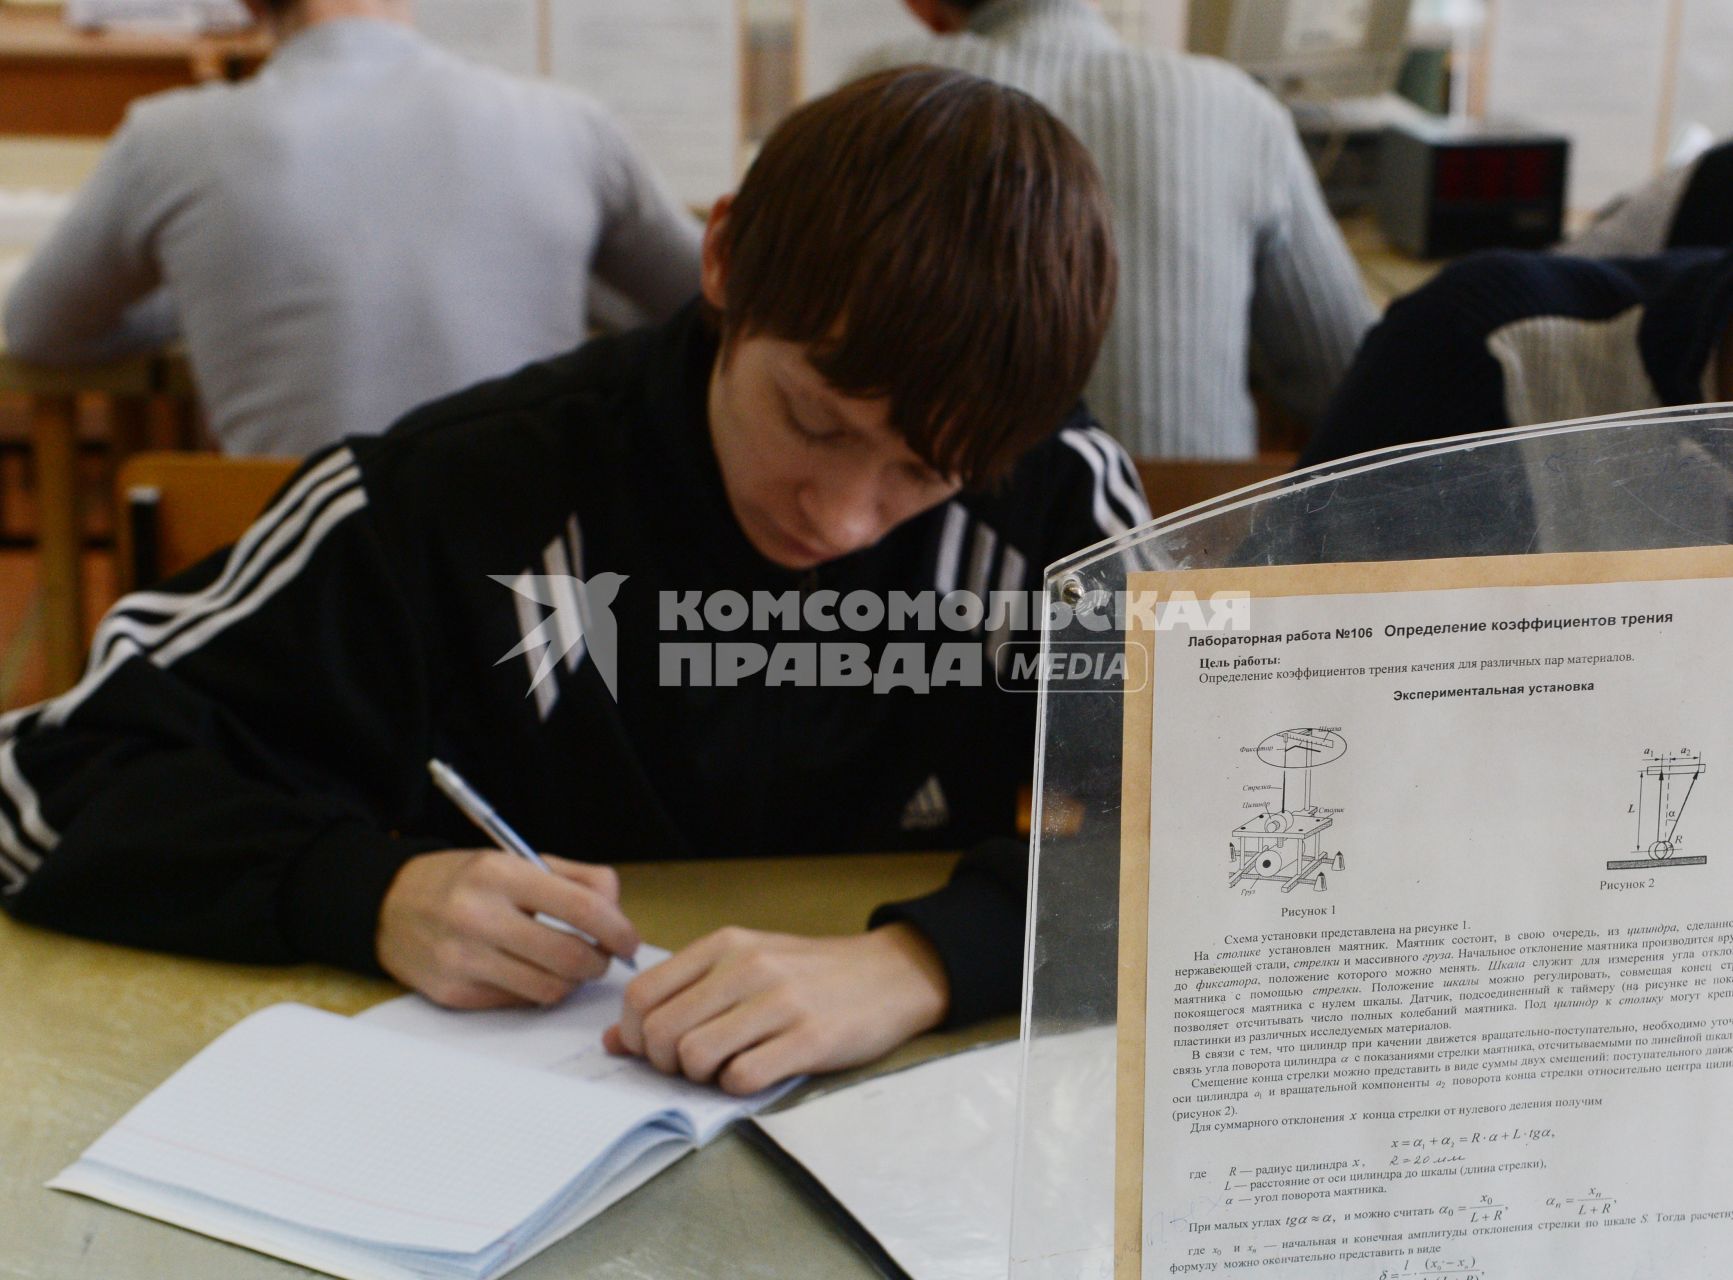 Оренбургский государственный университет. На снимке: студент во время лекции.